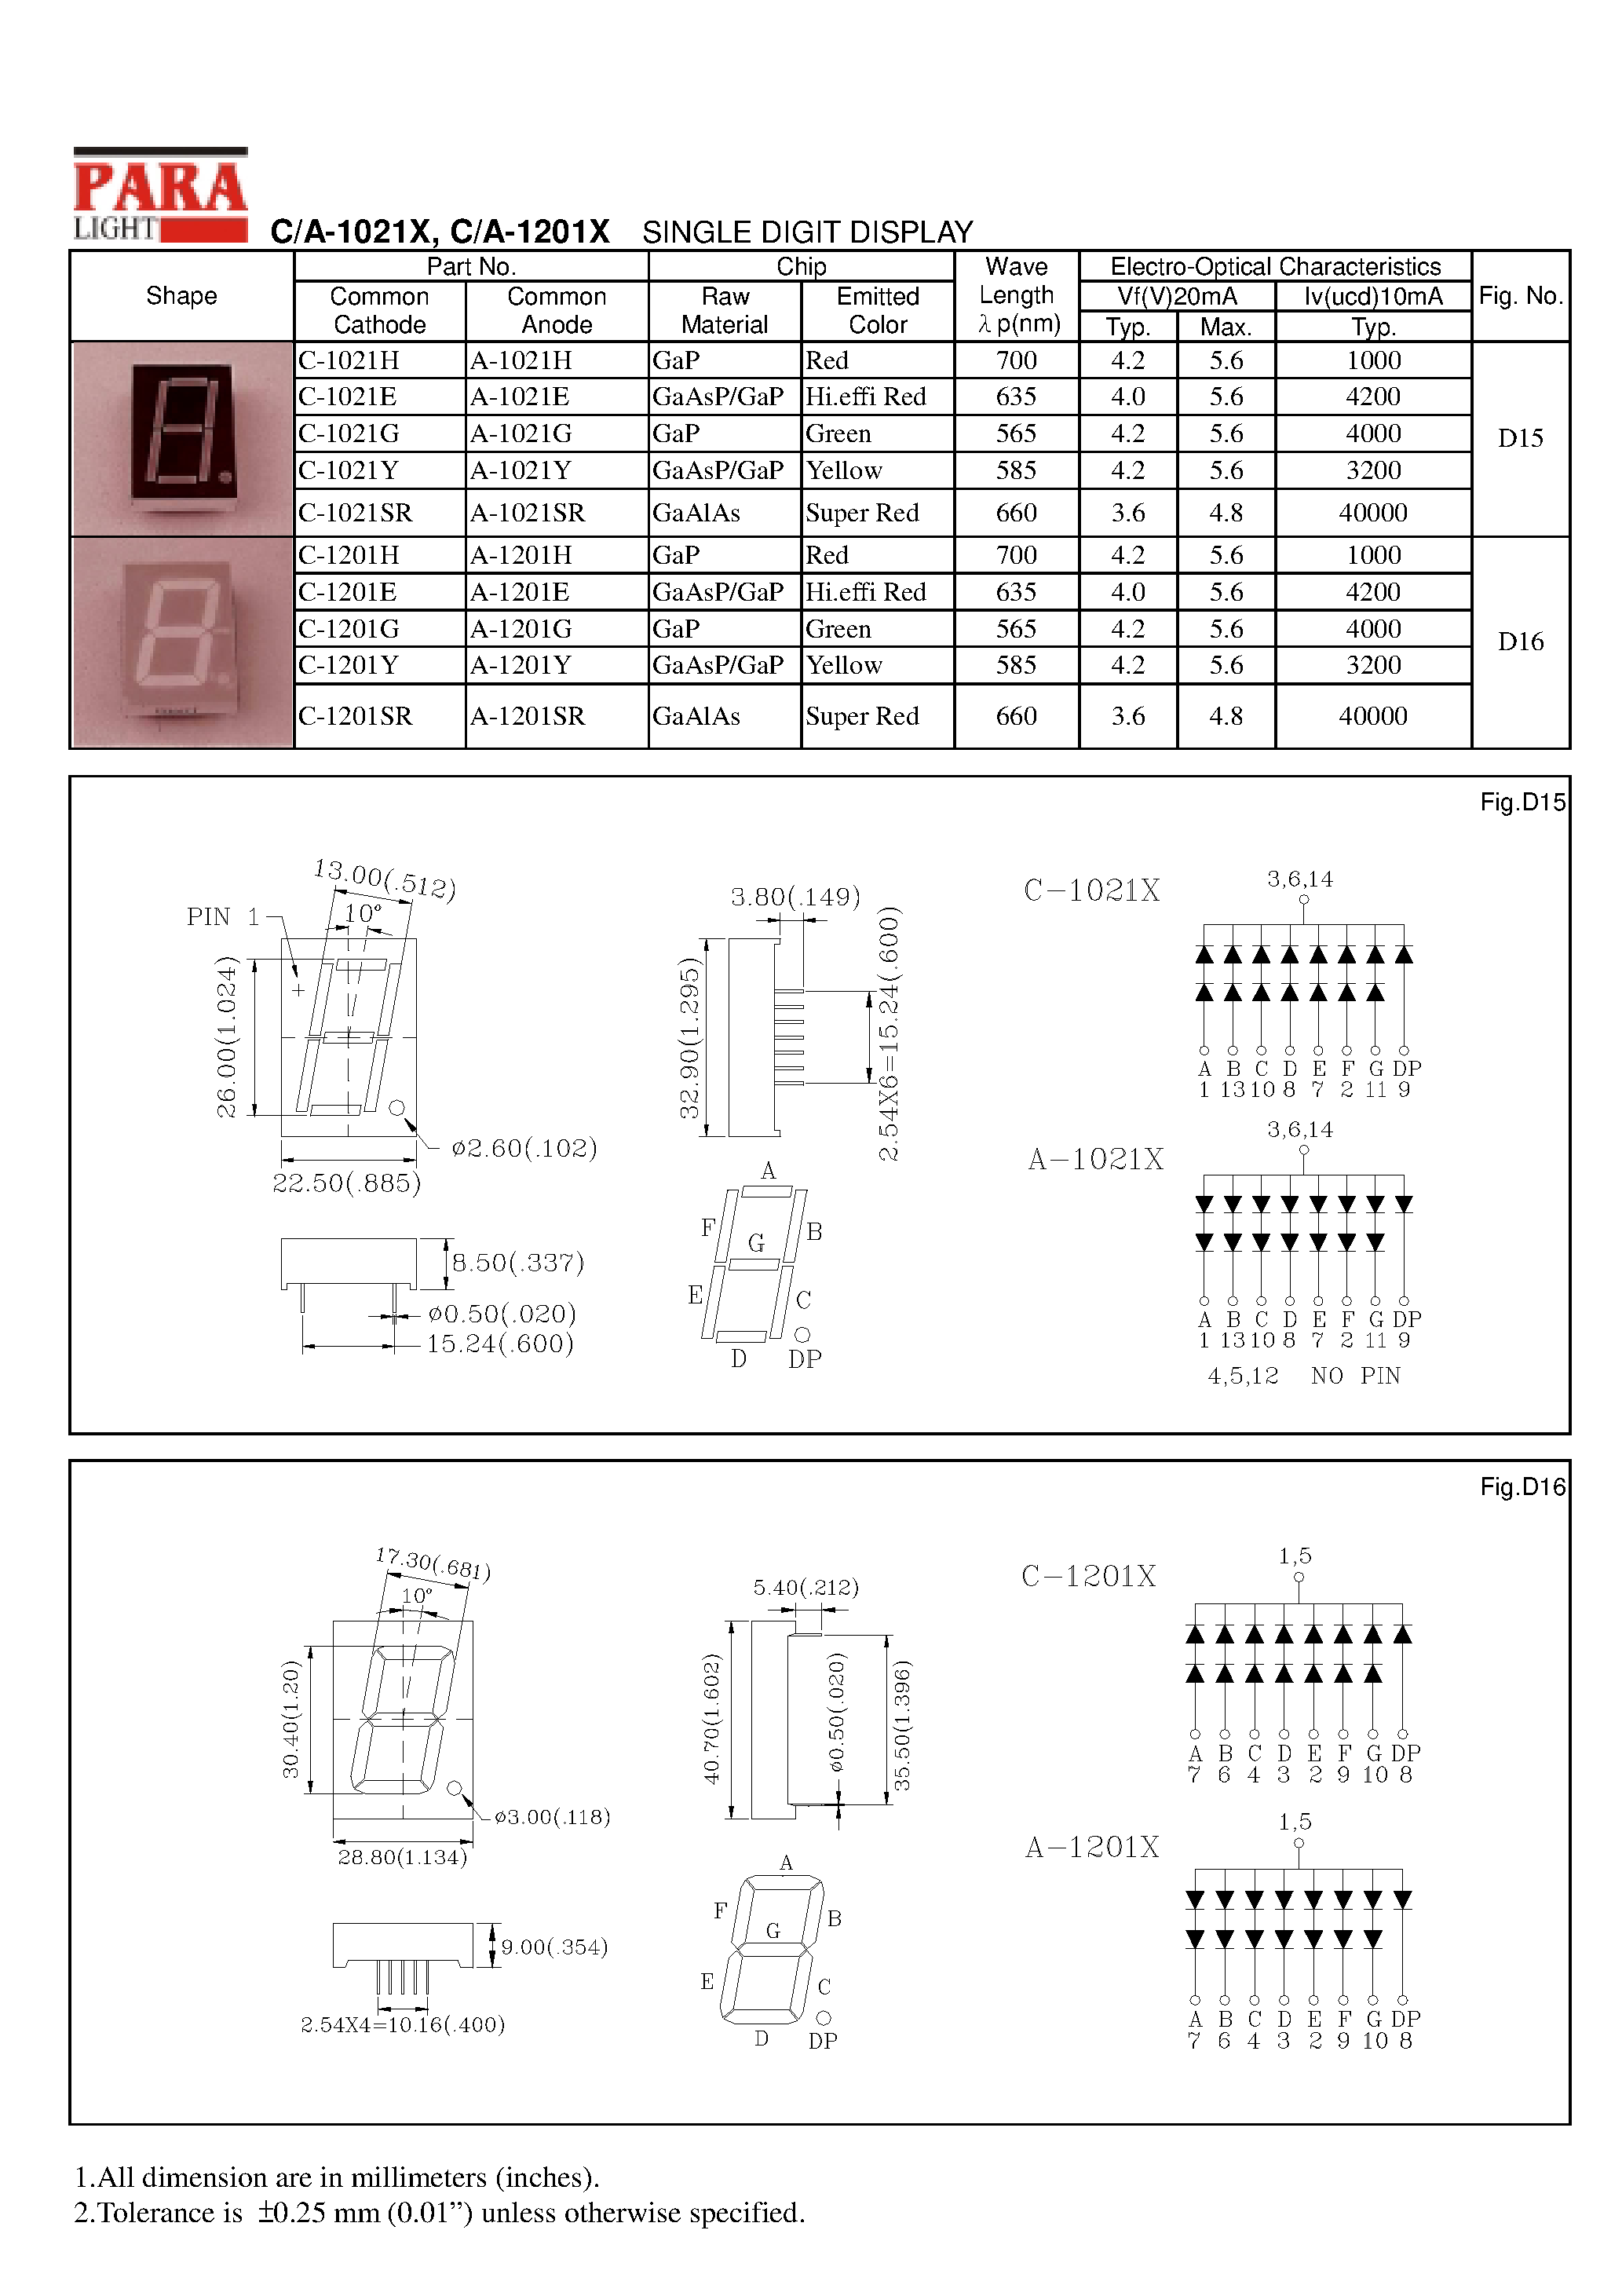 Даташит A-1201X - SINGLE DIGIT DISPLAY страница 1